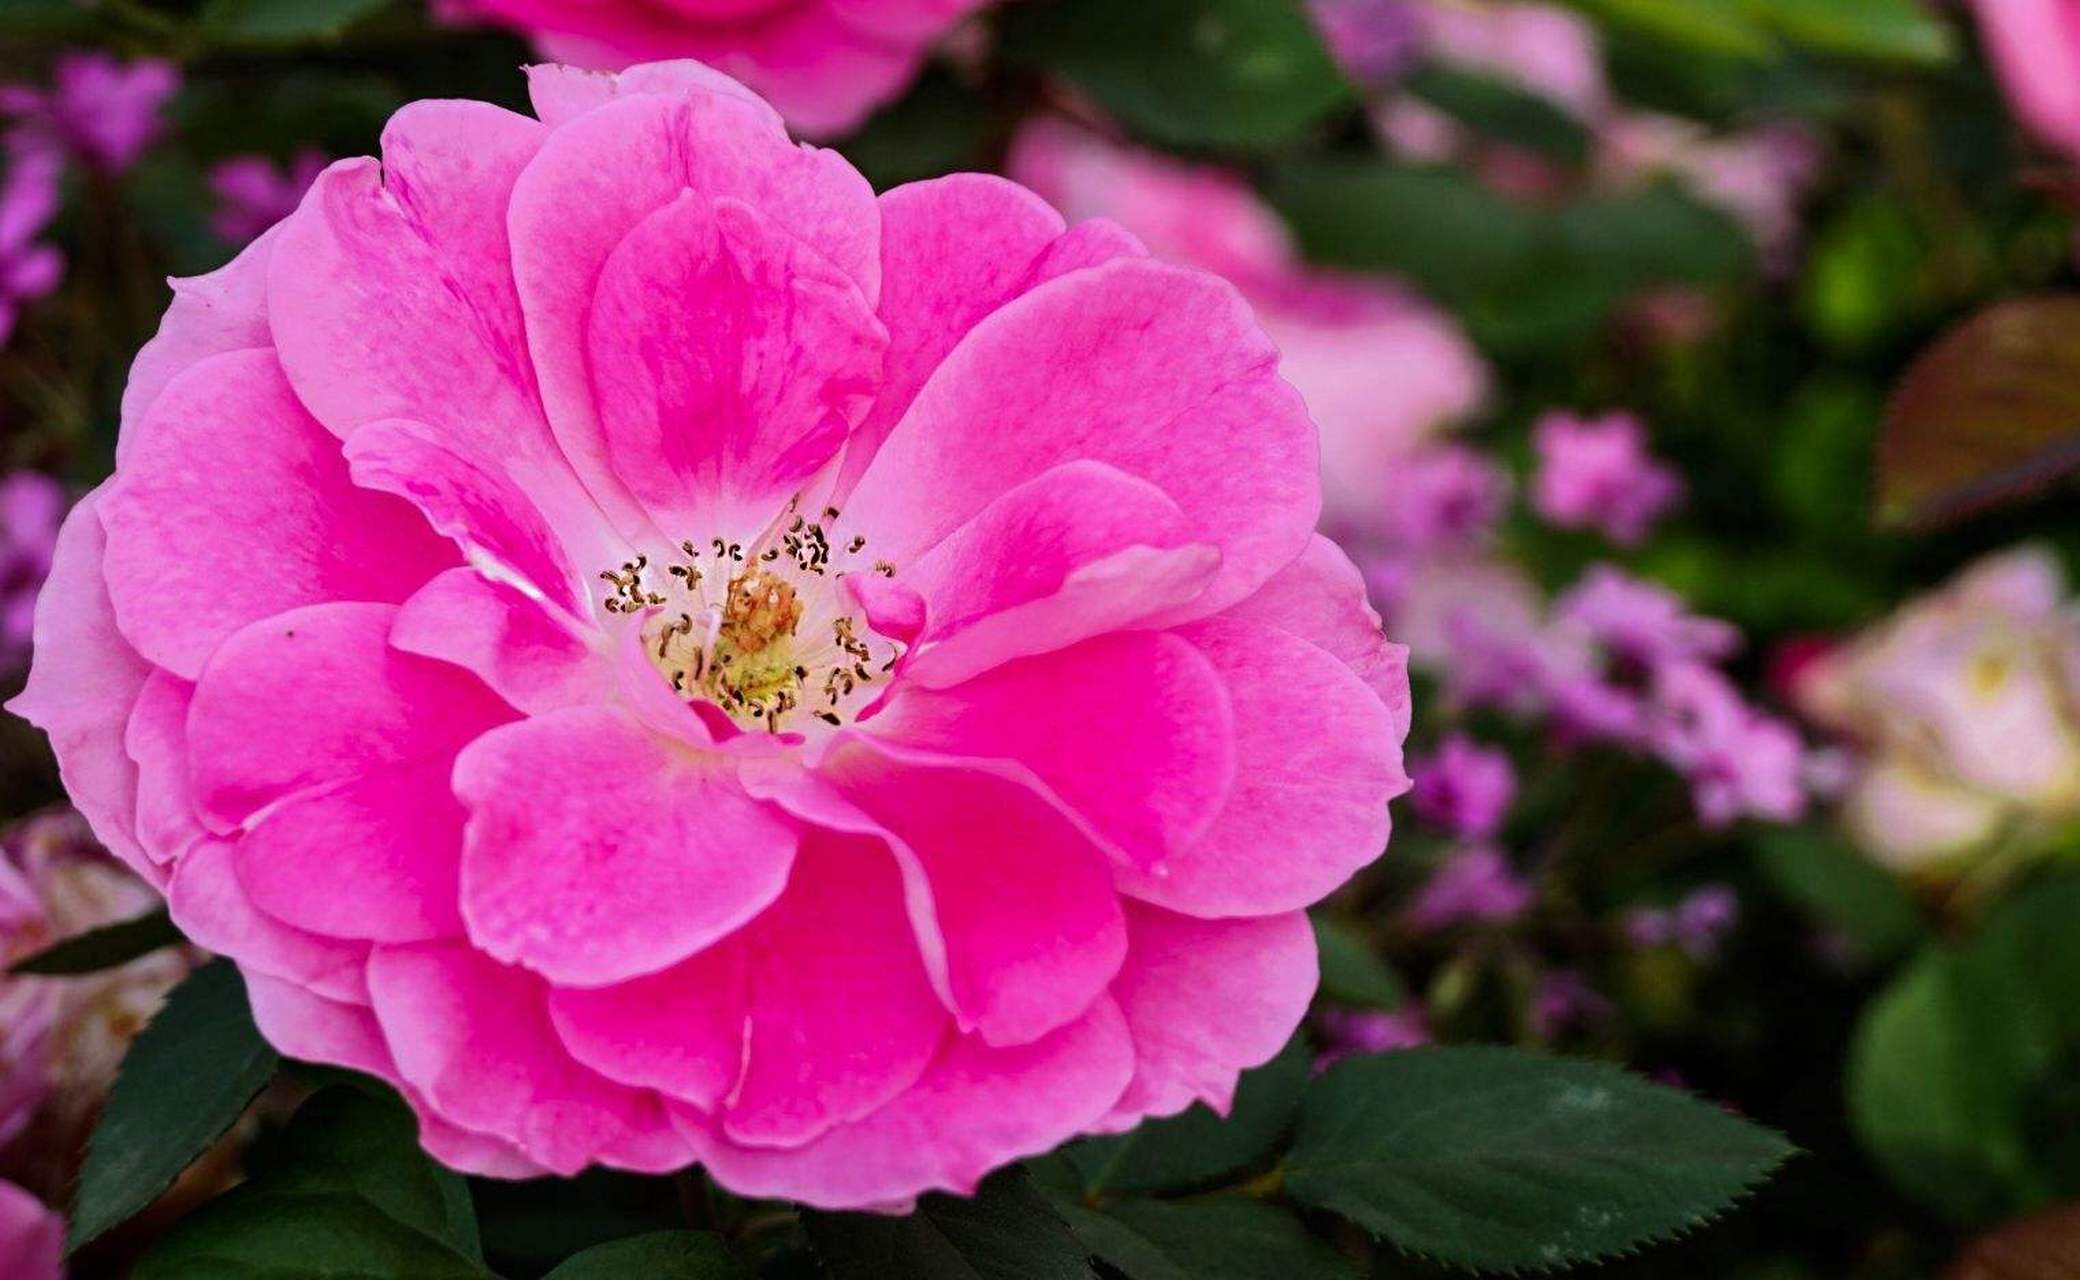 95这朵粉红色的玫瑰花,仿佛是春天的使者,轻轻诉说着浪漫的故事